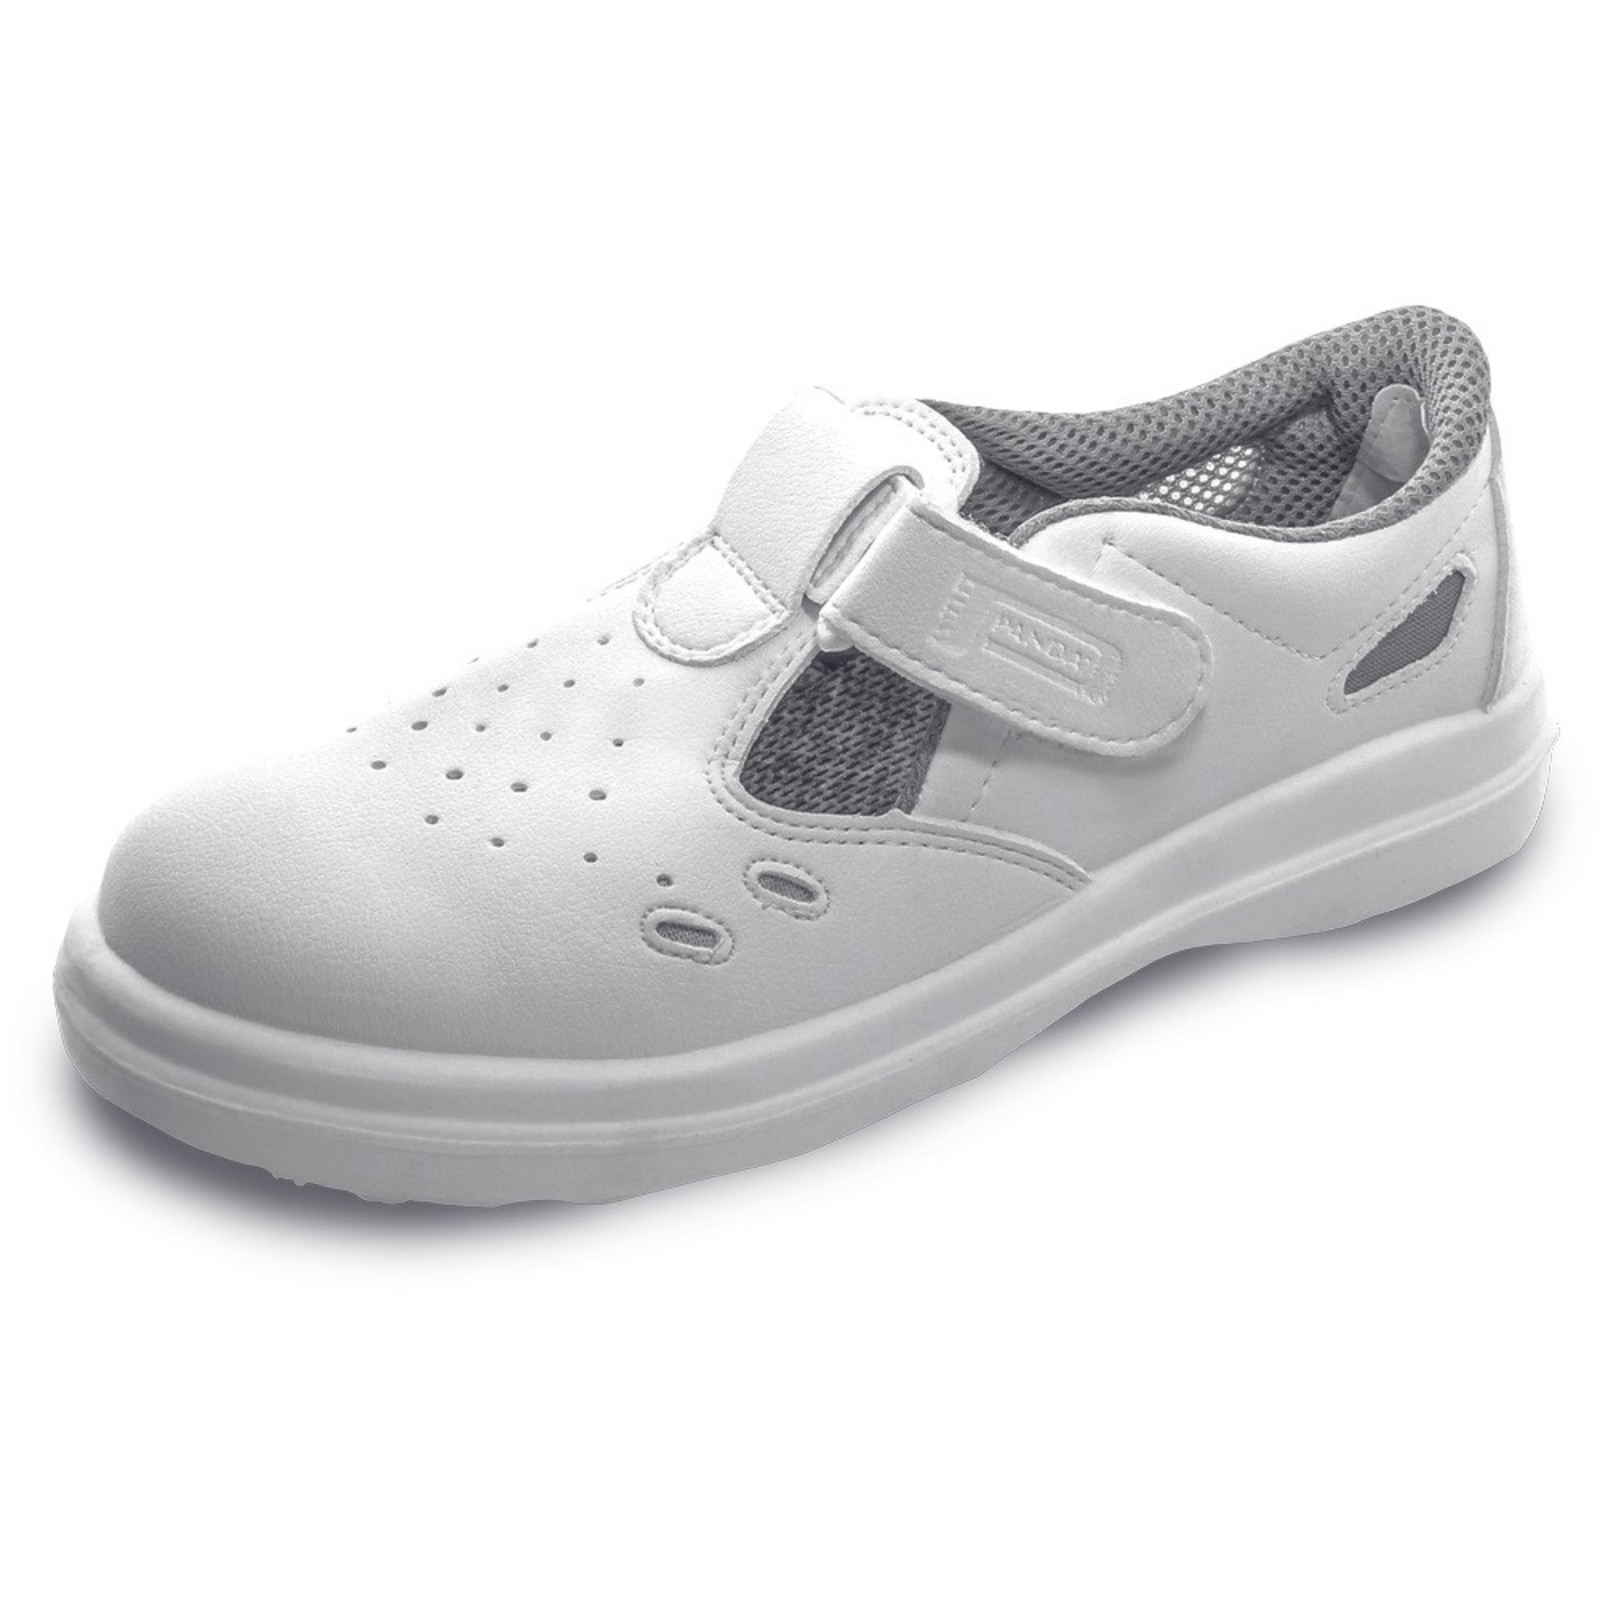 Bezpečnostné sandále Panda Sanitary Lybra S1 SRC - veľkosť: 38, farba: biela